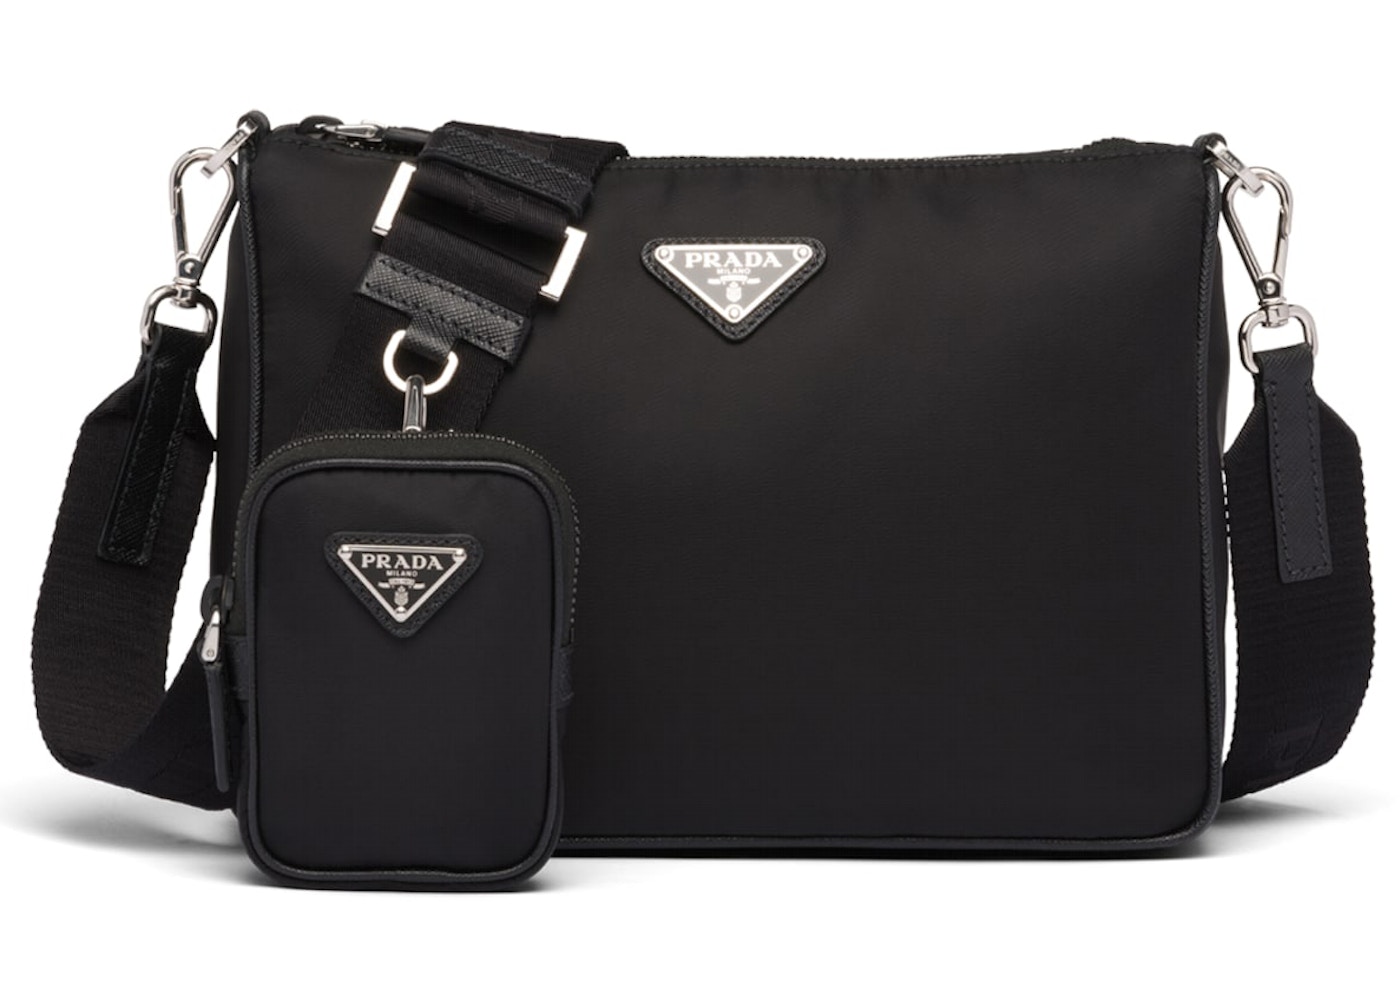 Prada Crossbody Bag Nylon Black in Nylon with Silver-tone